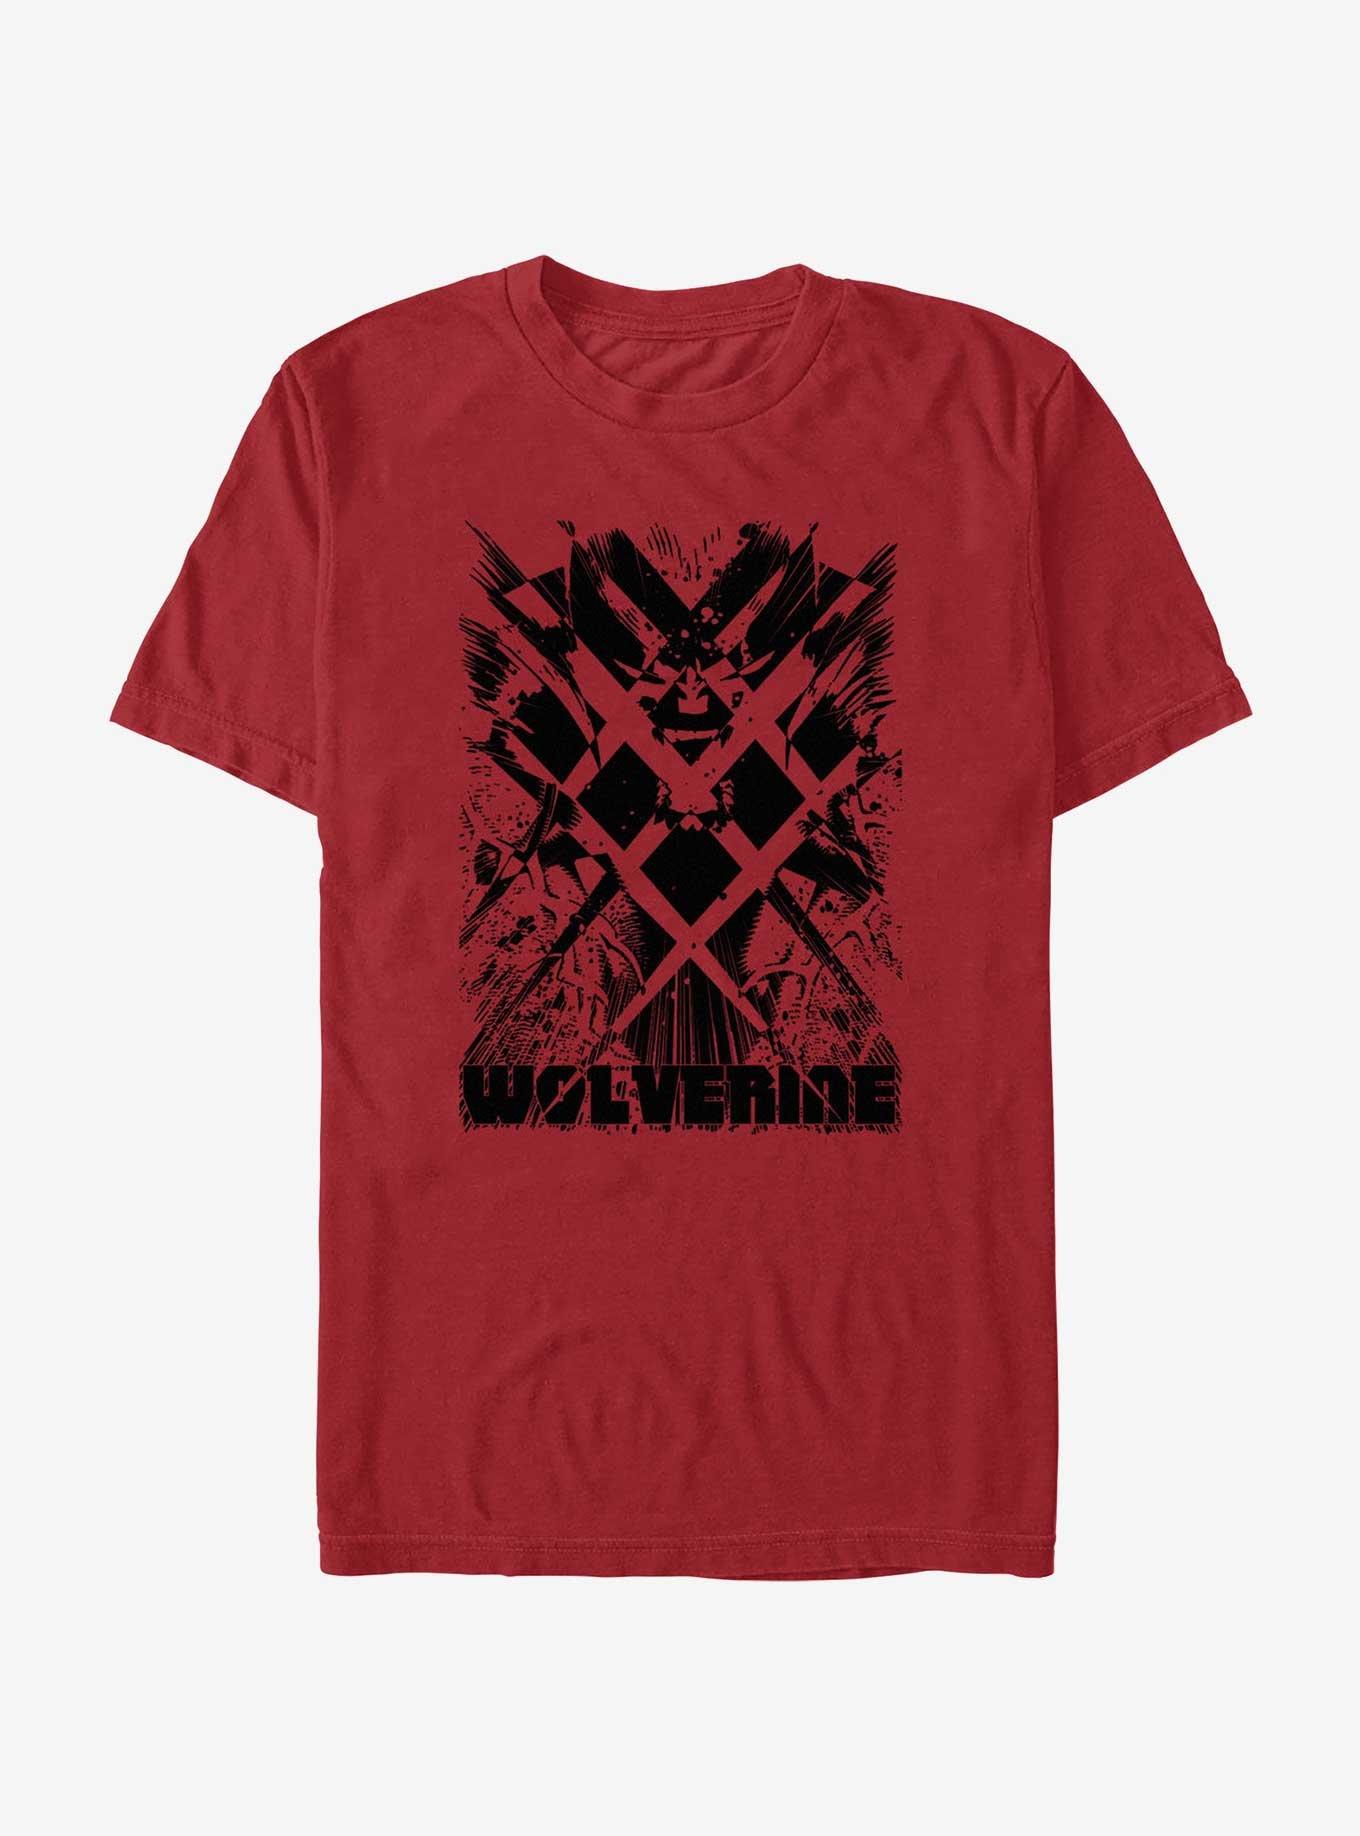 X-Men Reverse Blades T-Shirt